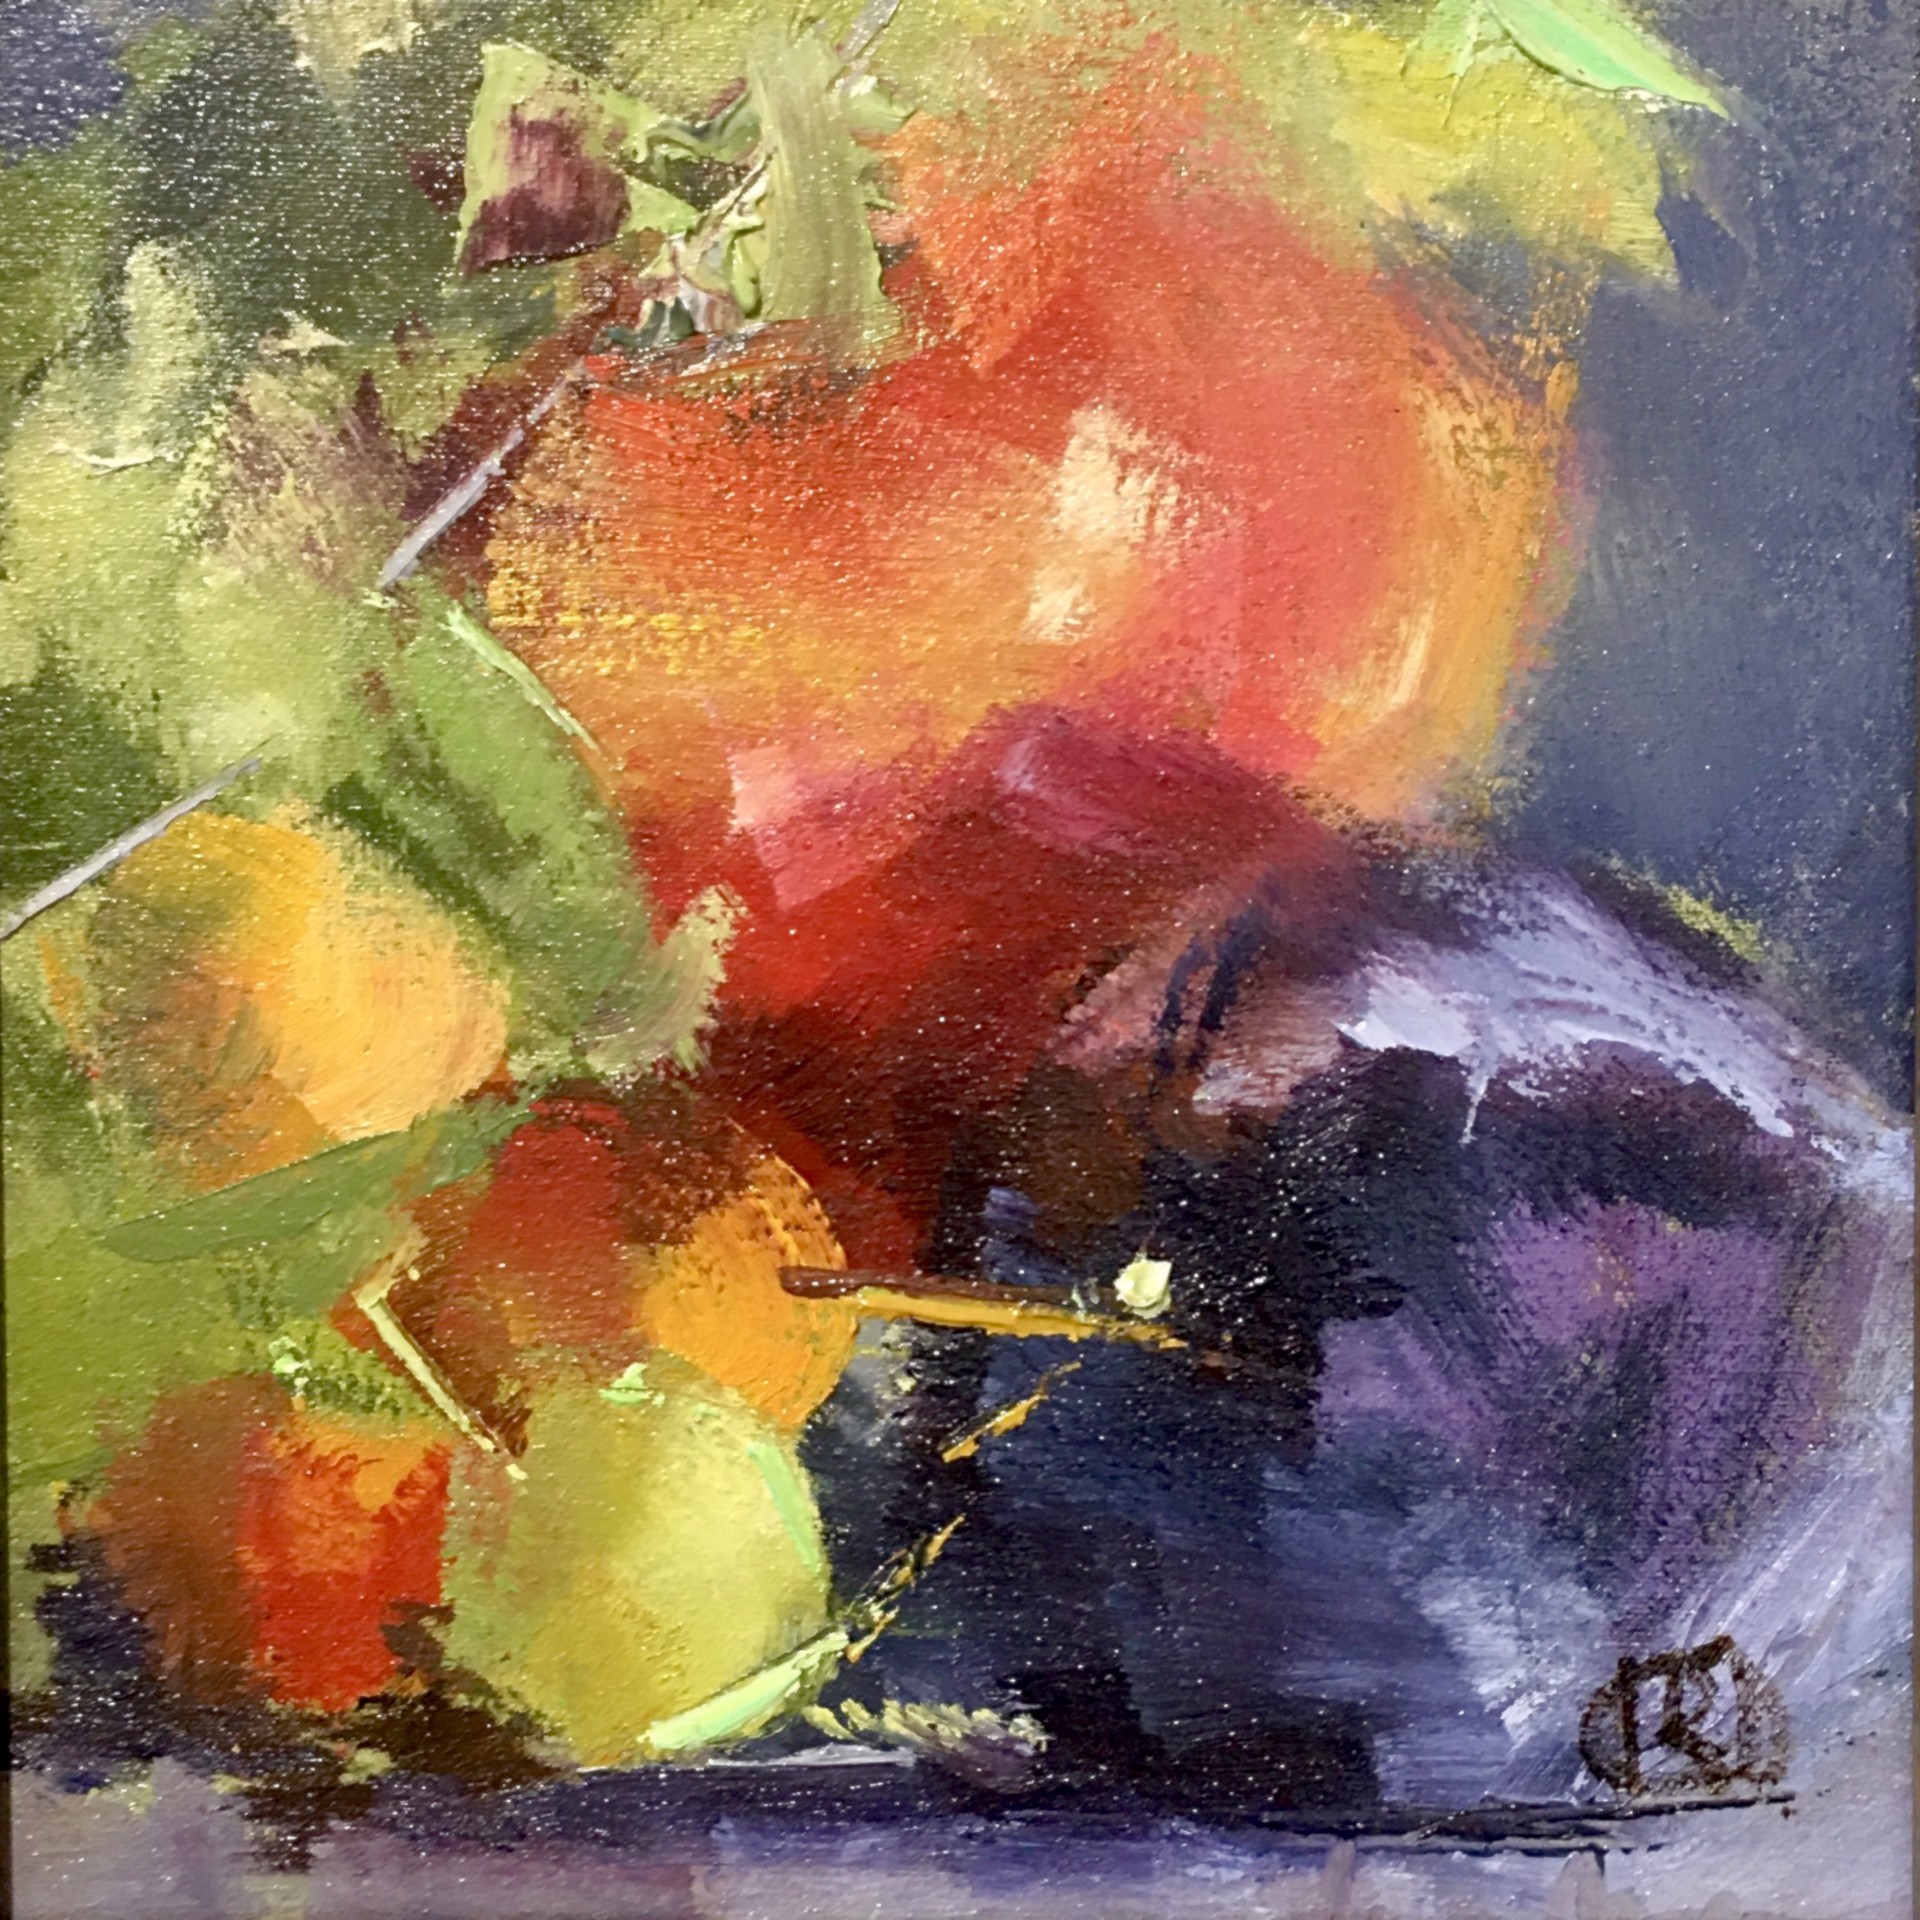 Heirloom Apples & Plums by Ingrid Derrickson